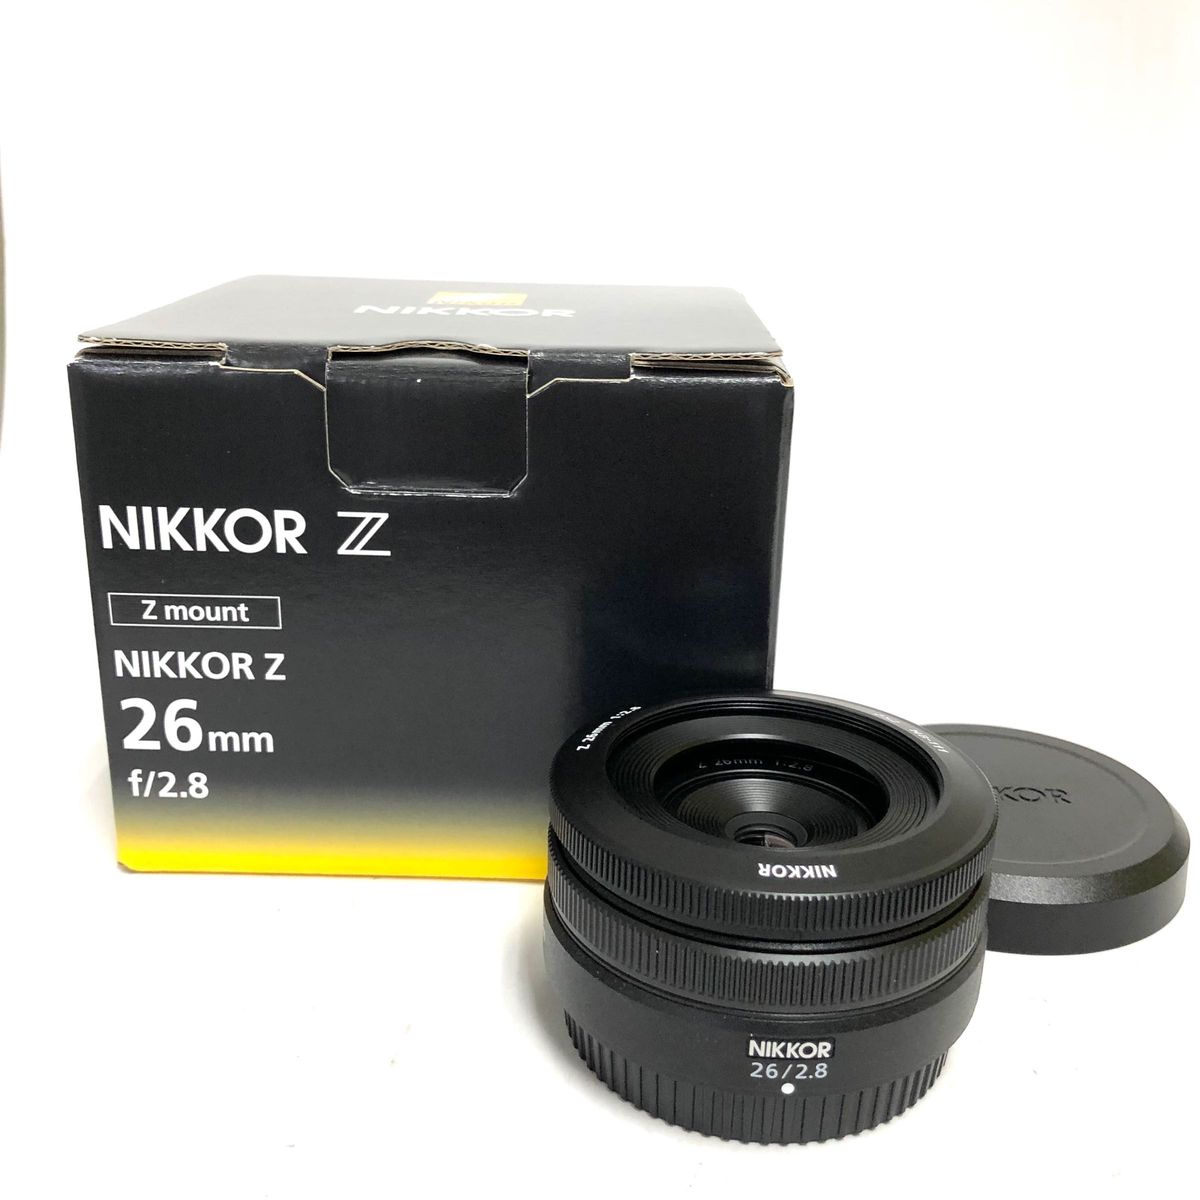 ニコン Nikon NIKKOR Z 26mm f/2.8 程度良